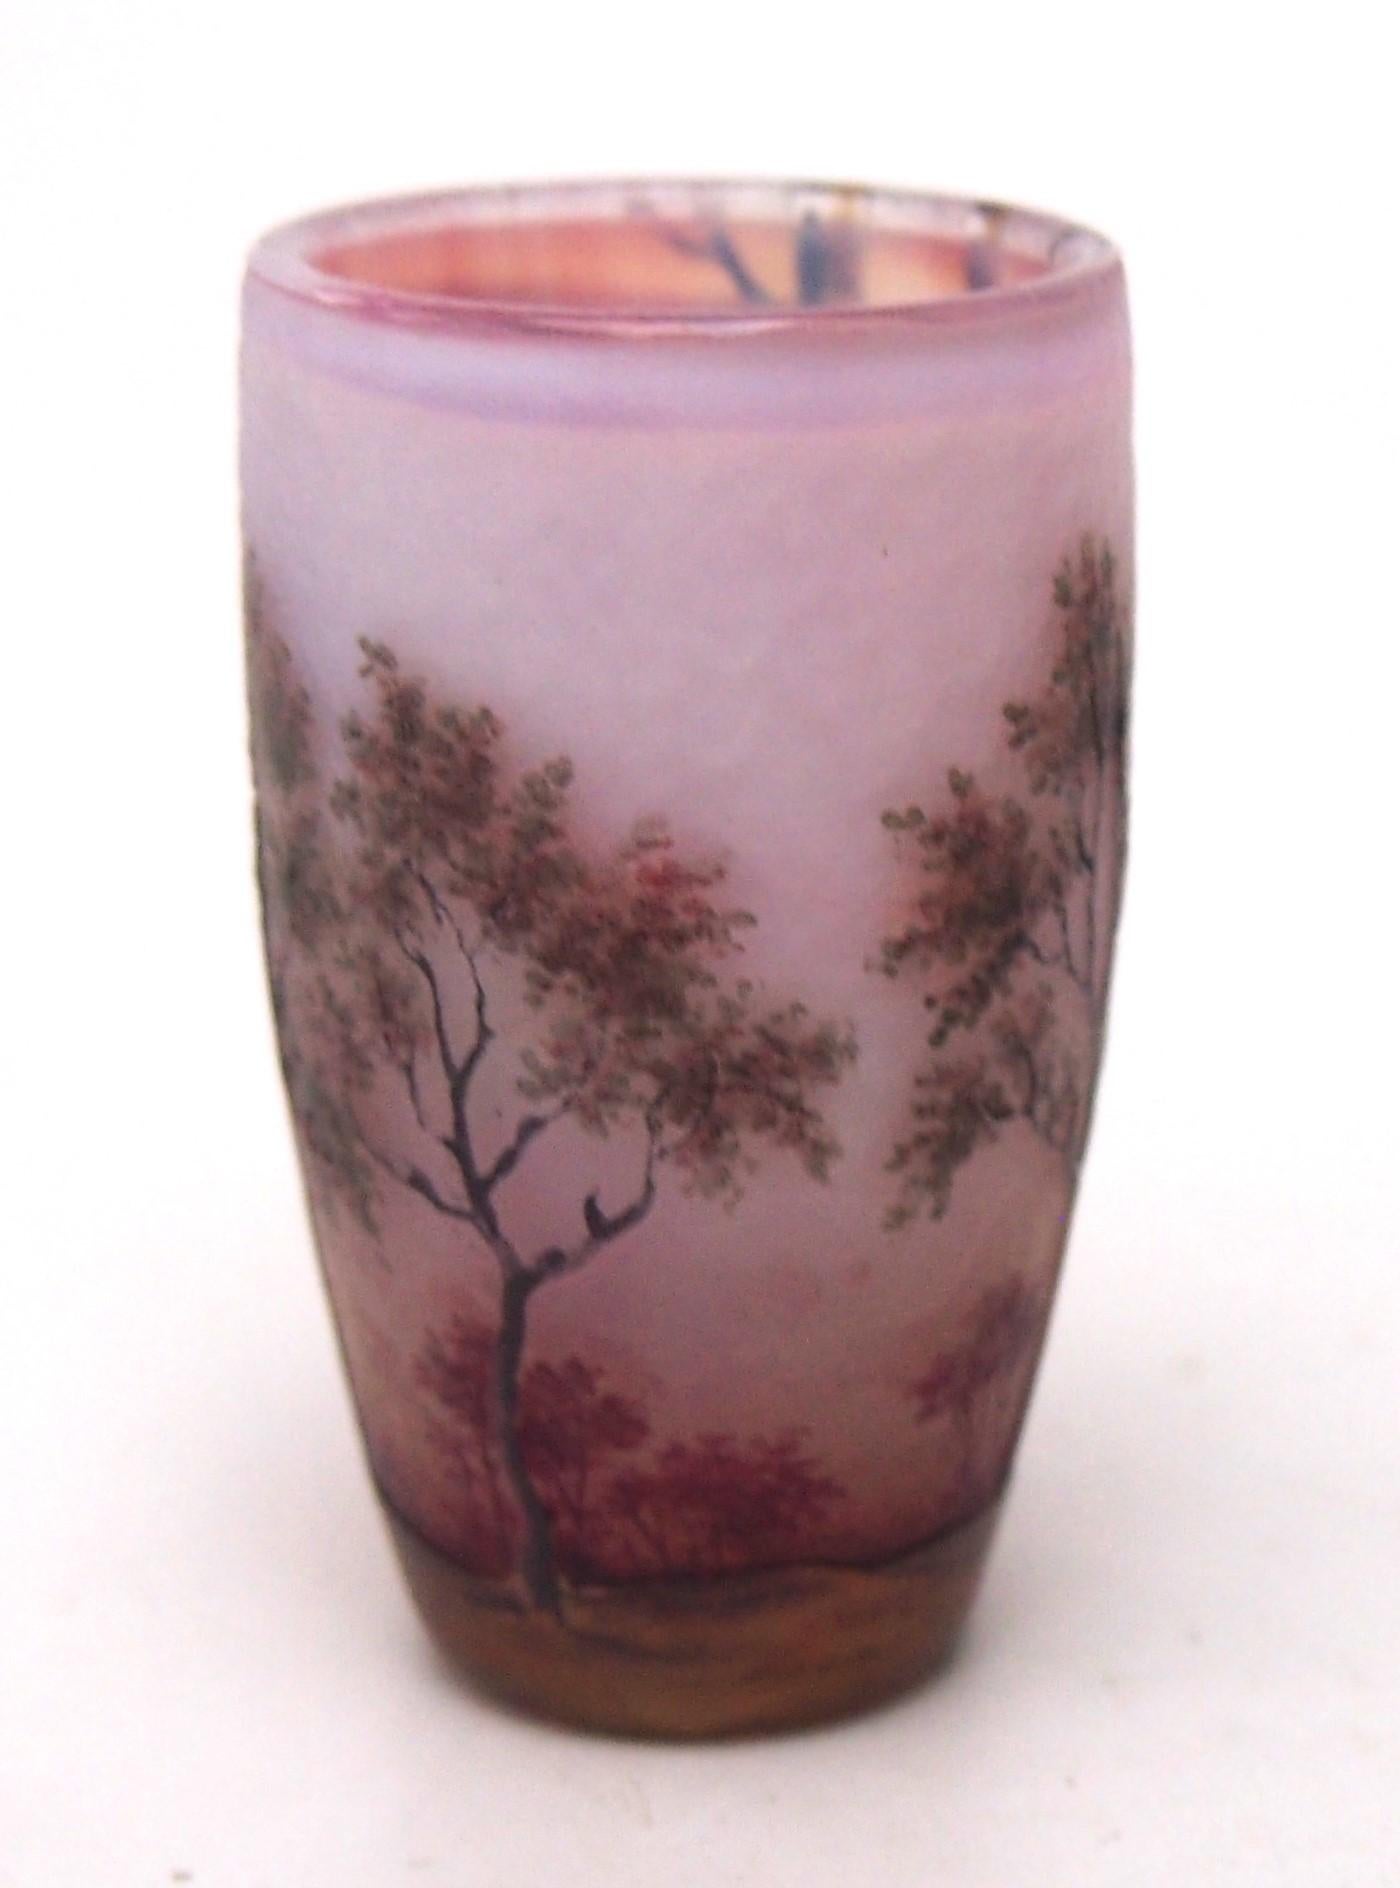 Miniaturnahe Vase Daum Spring Scene - polychrom emailliert und mit Kamee, die eine frühlingshafte Waldszene mit neu austreibenden Bäumen vor einem rosafarbenen Sonnenaufgang am frühen Morgen darstellt.  Er hat die Größe eines großen Fingerhuts.